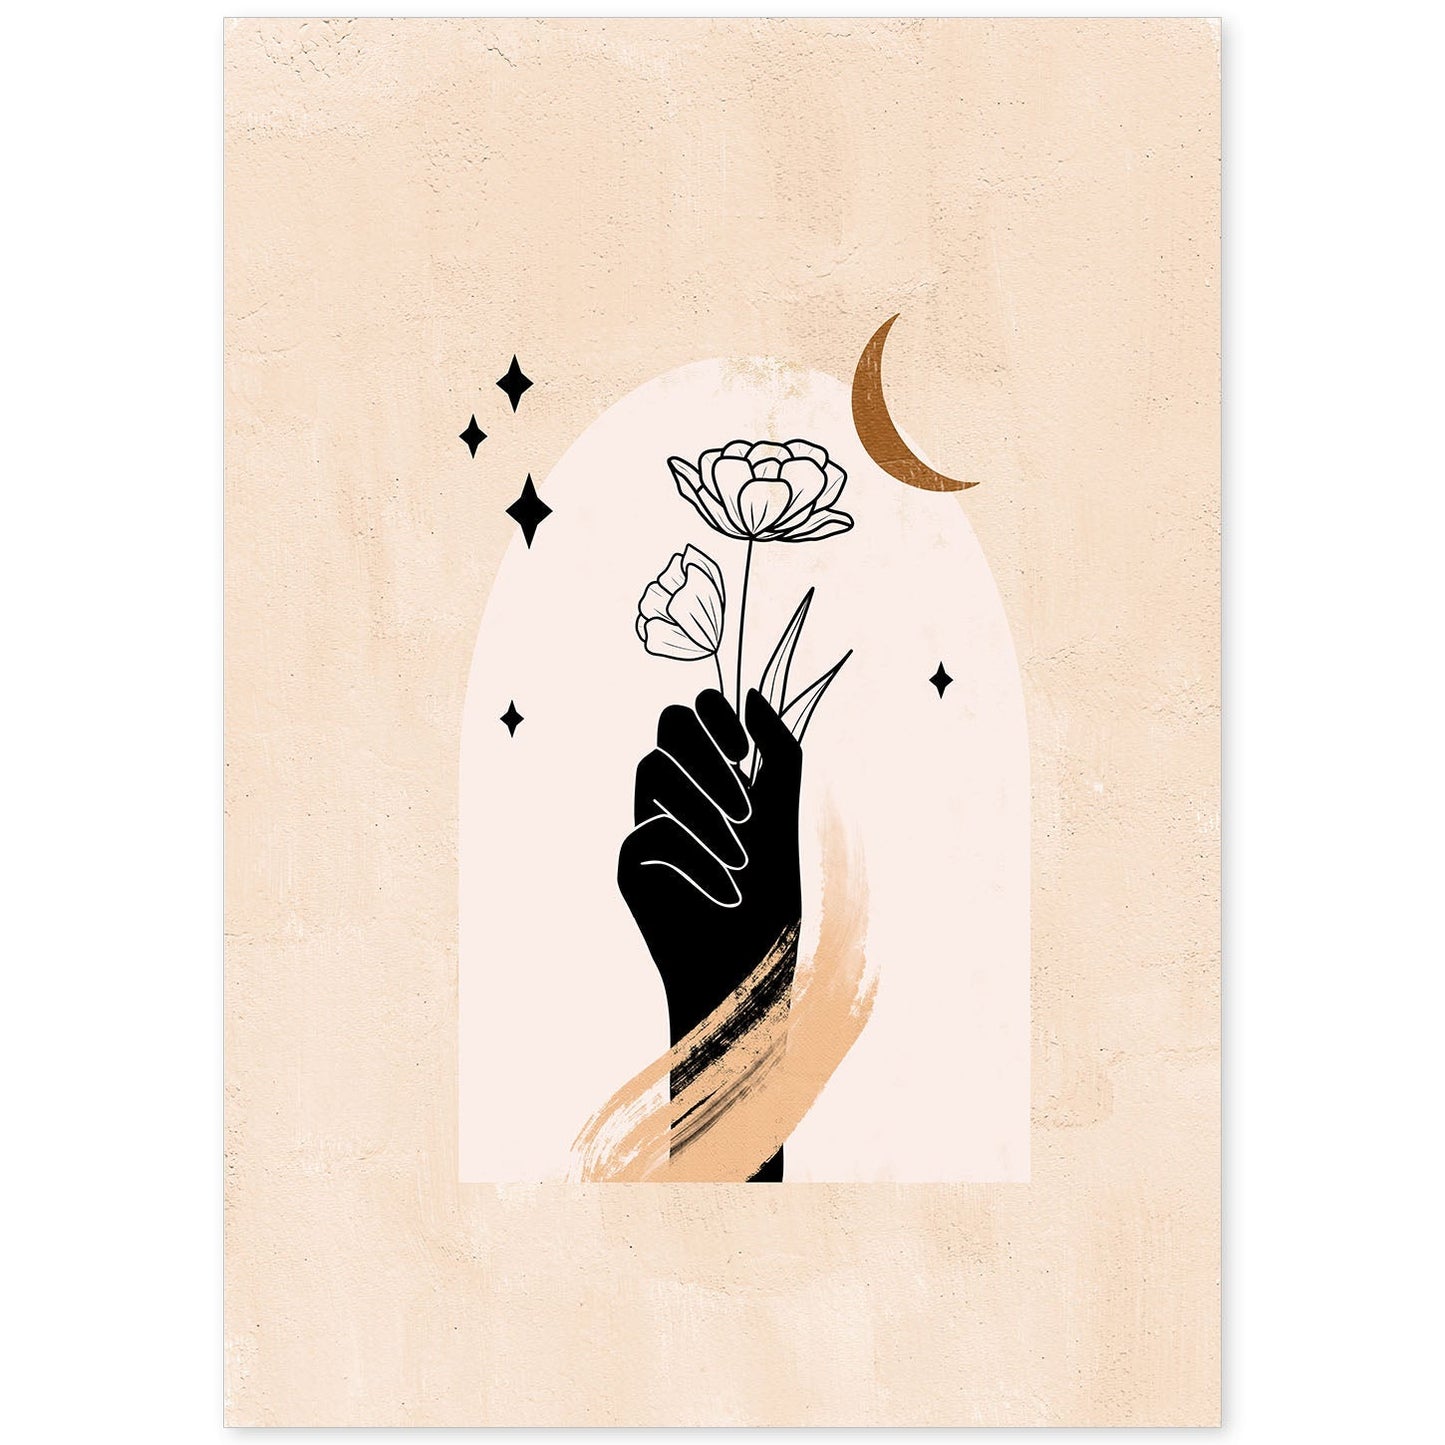 Poster con imágenes místicas, con imágenes de soles y lunas. misticismo, esoterismo, y paganismo. 'Místico 10'.-Artwork-Nacnic-A4-Sin marco-Nacnic Estudio SL